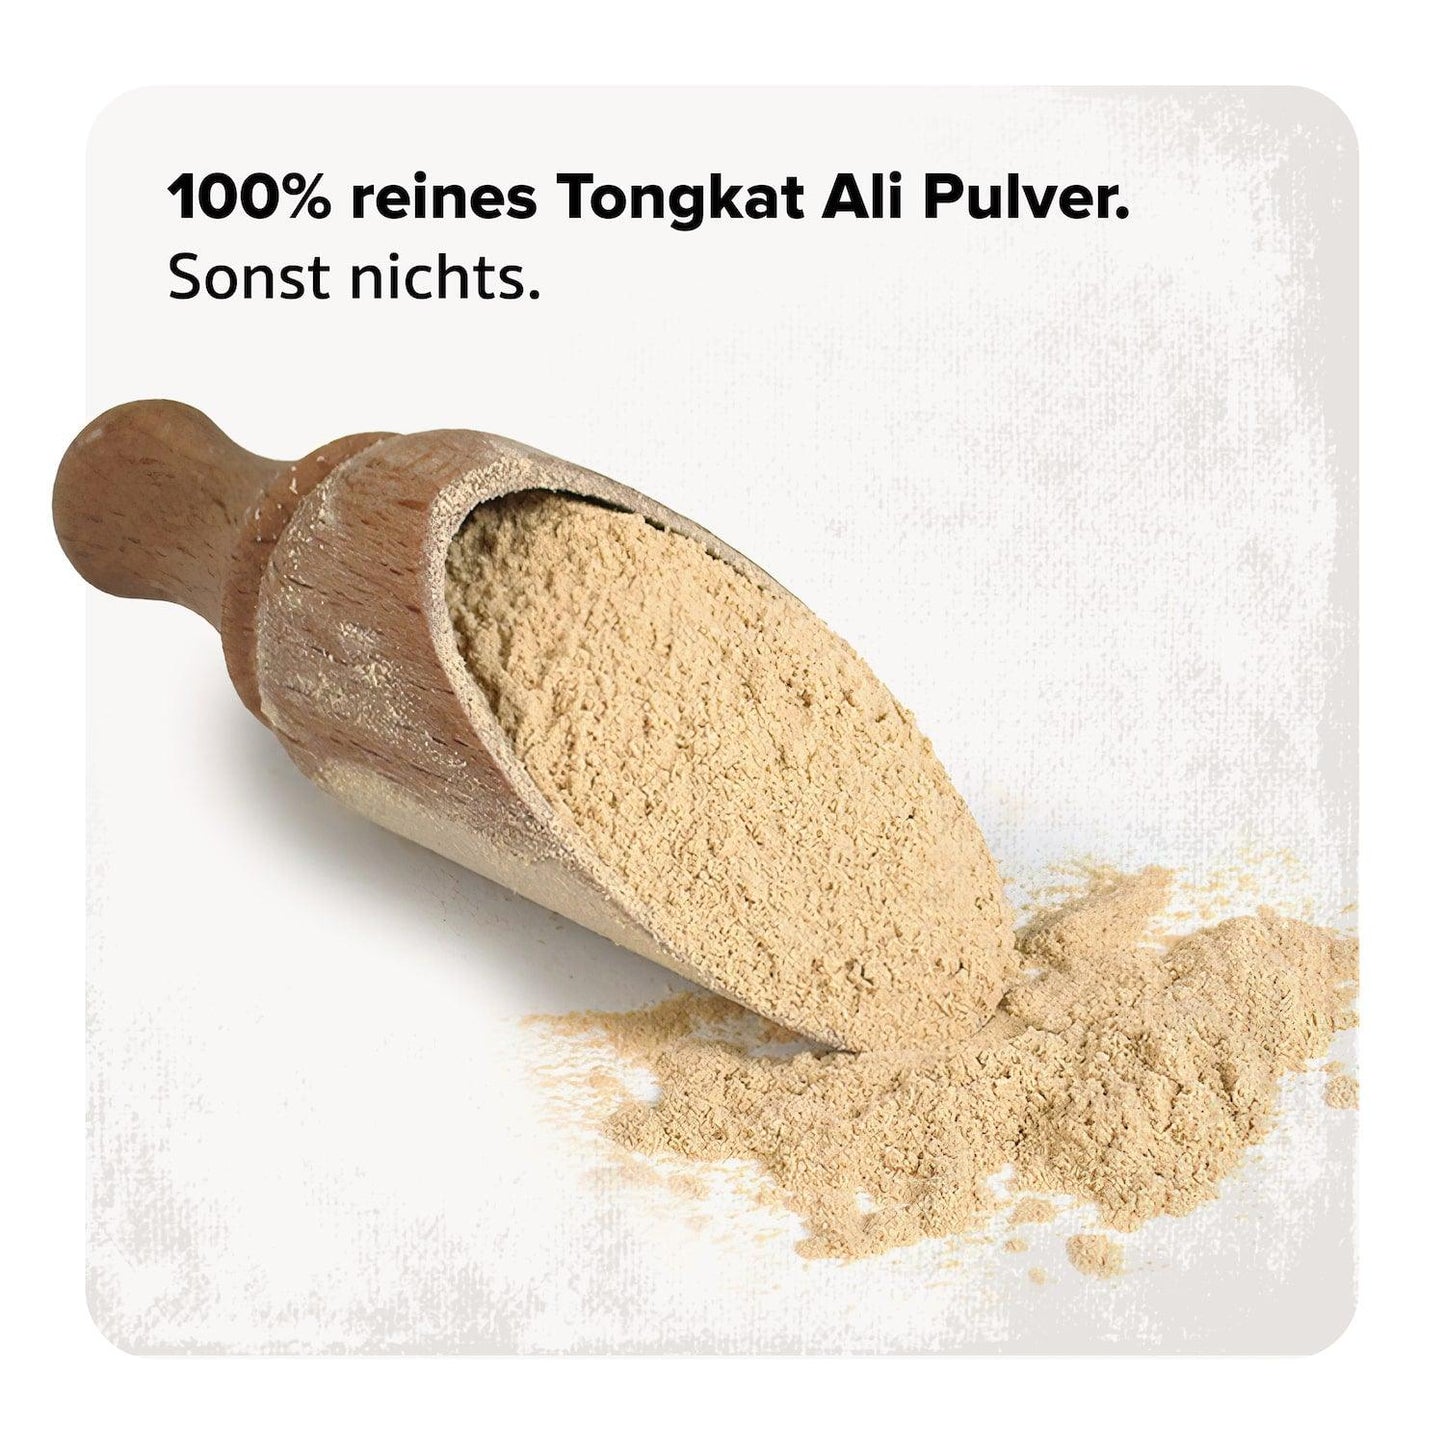 Unser Tongkat Ali Extrakt besteht zu 100% als Tongkat Ali und enthält keinerlei Zusatzstoffe